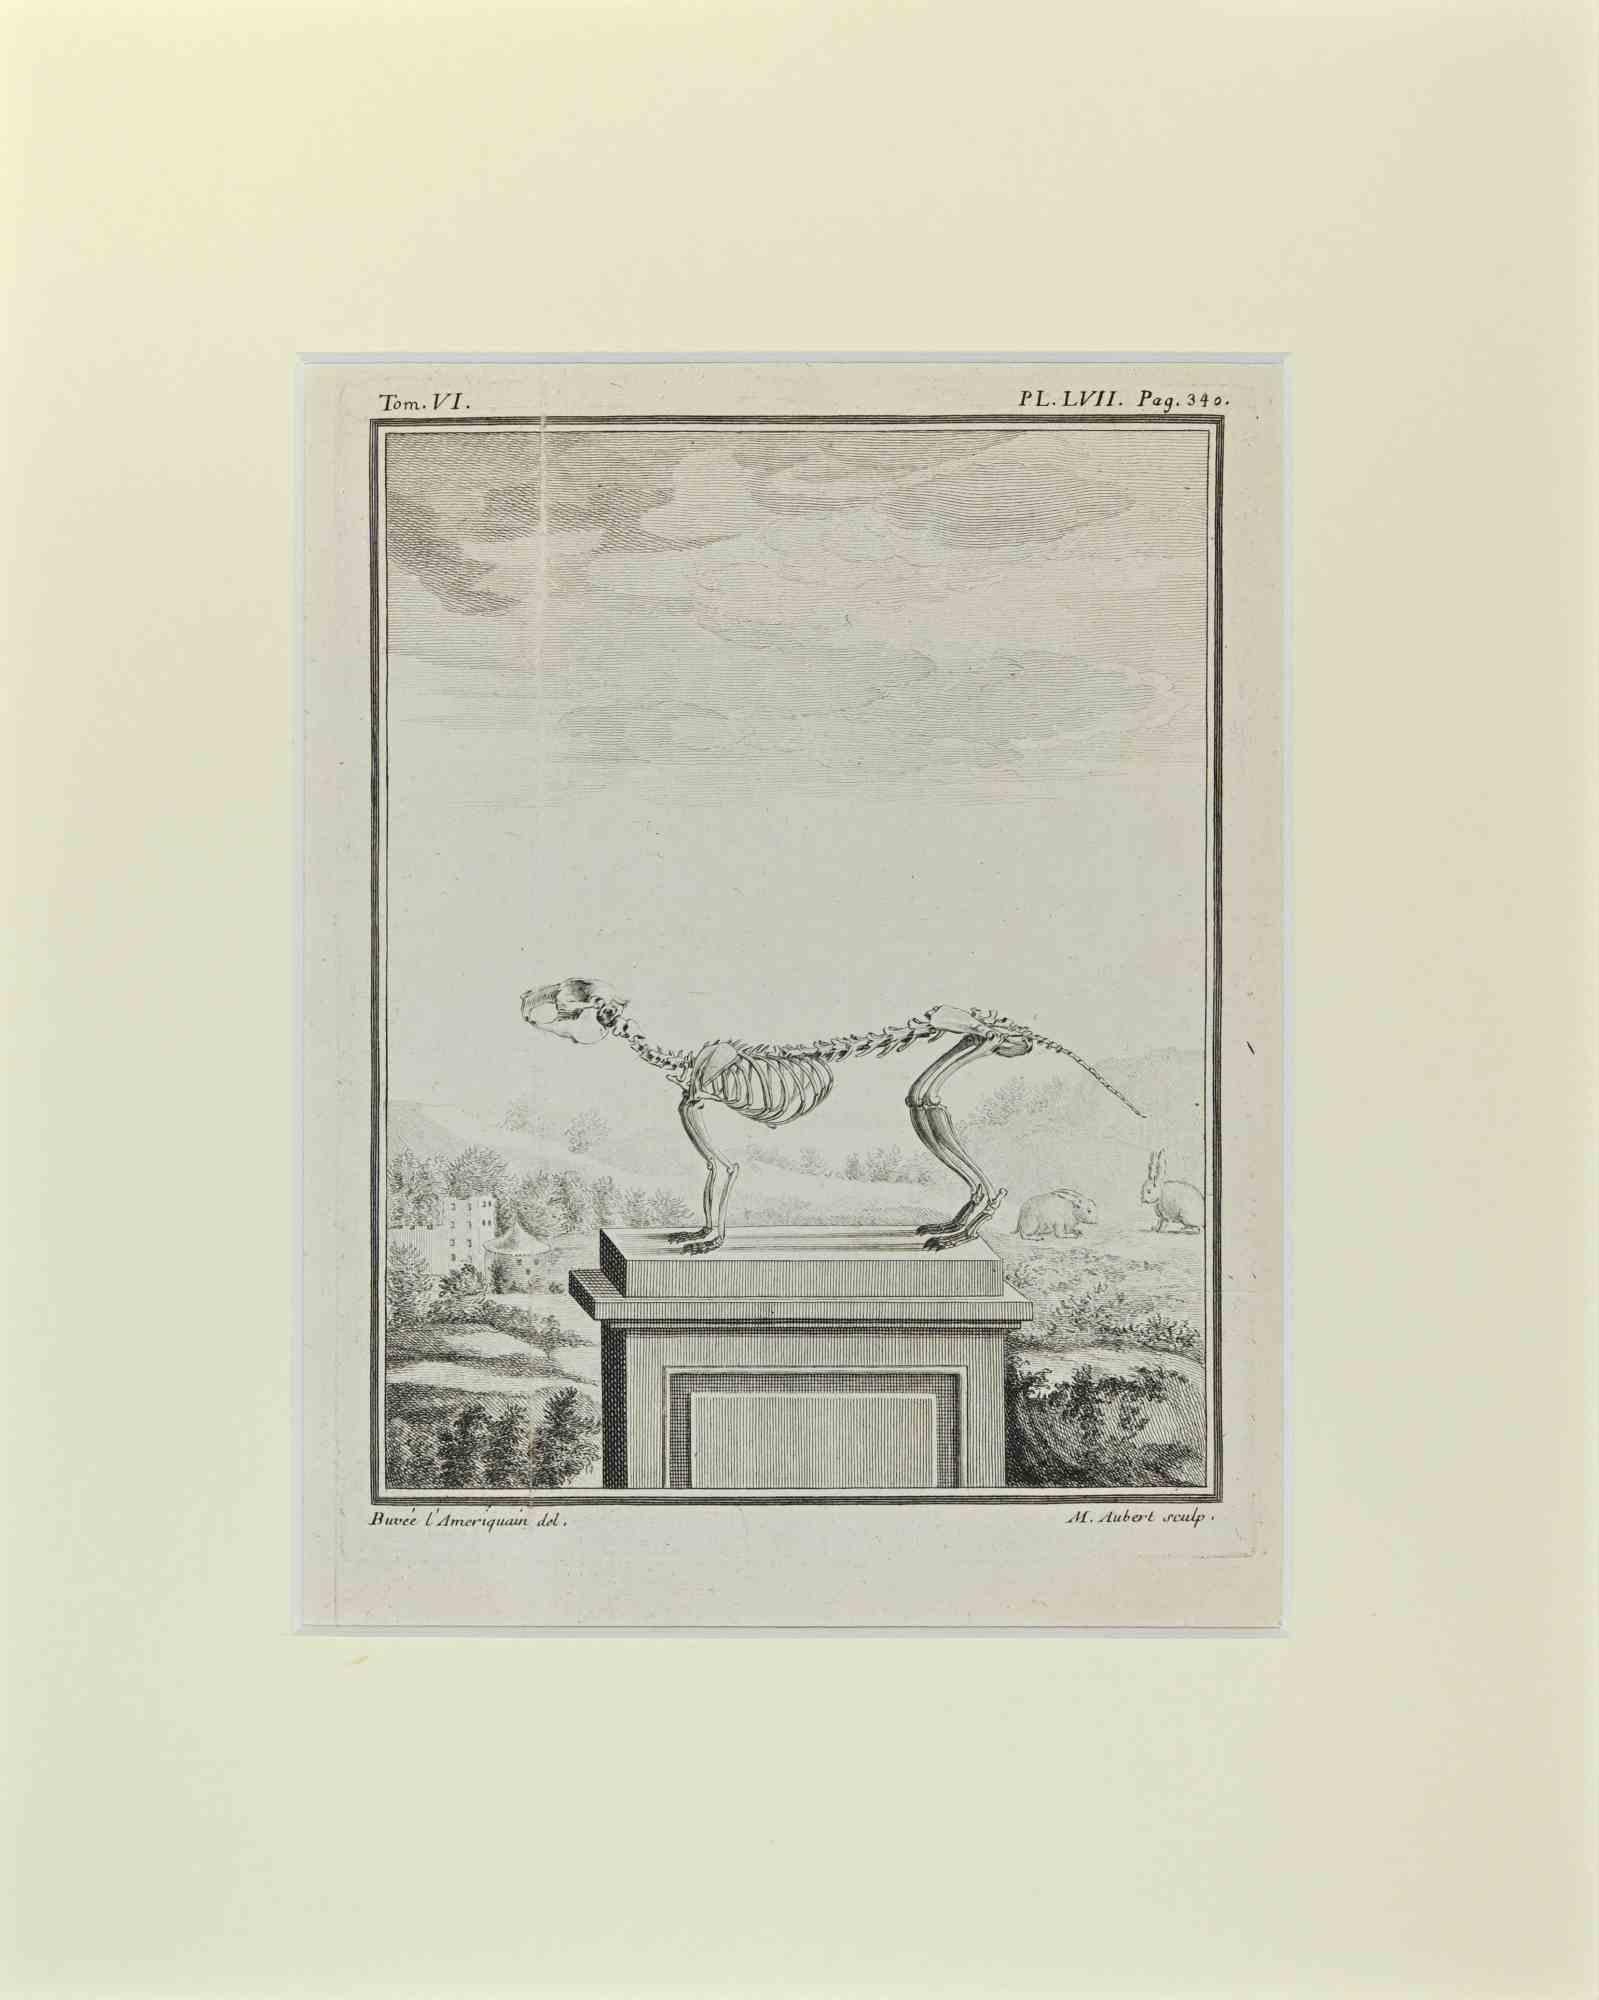 Skeleton Quadrupedes ist ein Kunstwerk von Buvée l'Américain aus dem Jahr 1771.  

Radierung B./W. Druck auf Elfenbeinpapier. Signiert auf der Platte am unteren linken Rand.

Das Werk ist auf Karton geklebt. Abmessungen insgesamt: 35x28 cm.

Das